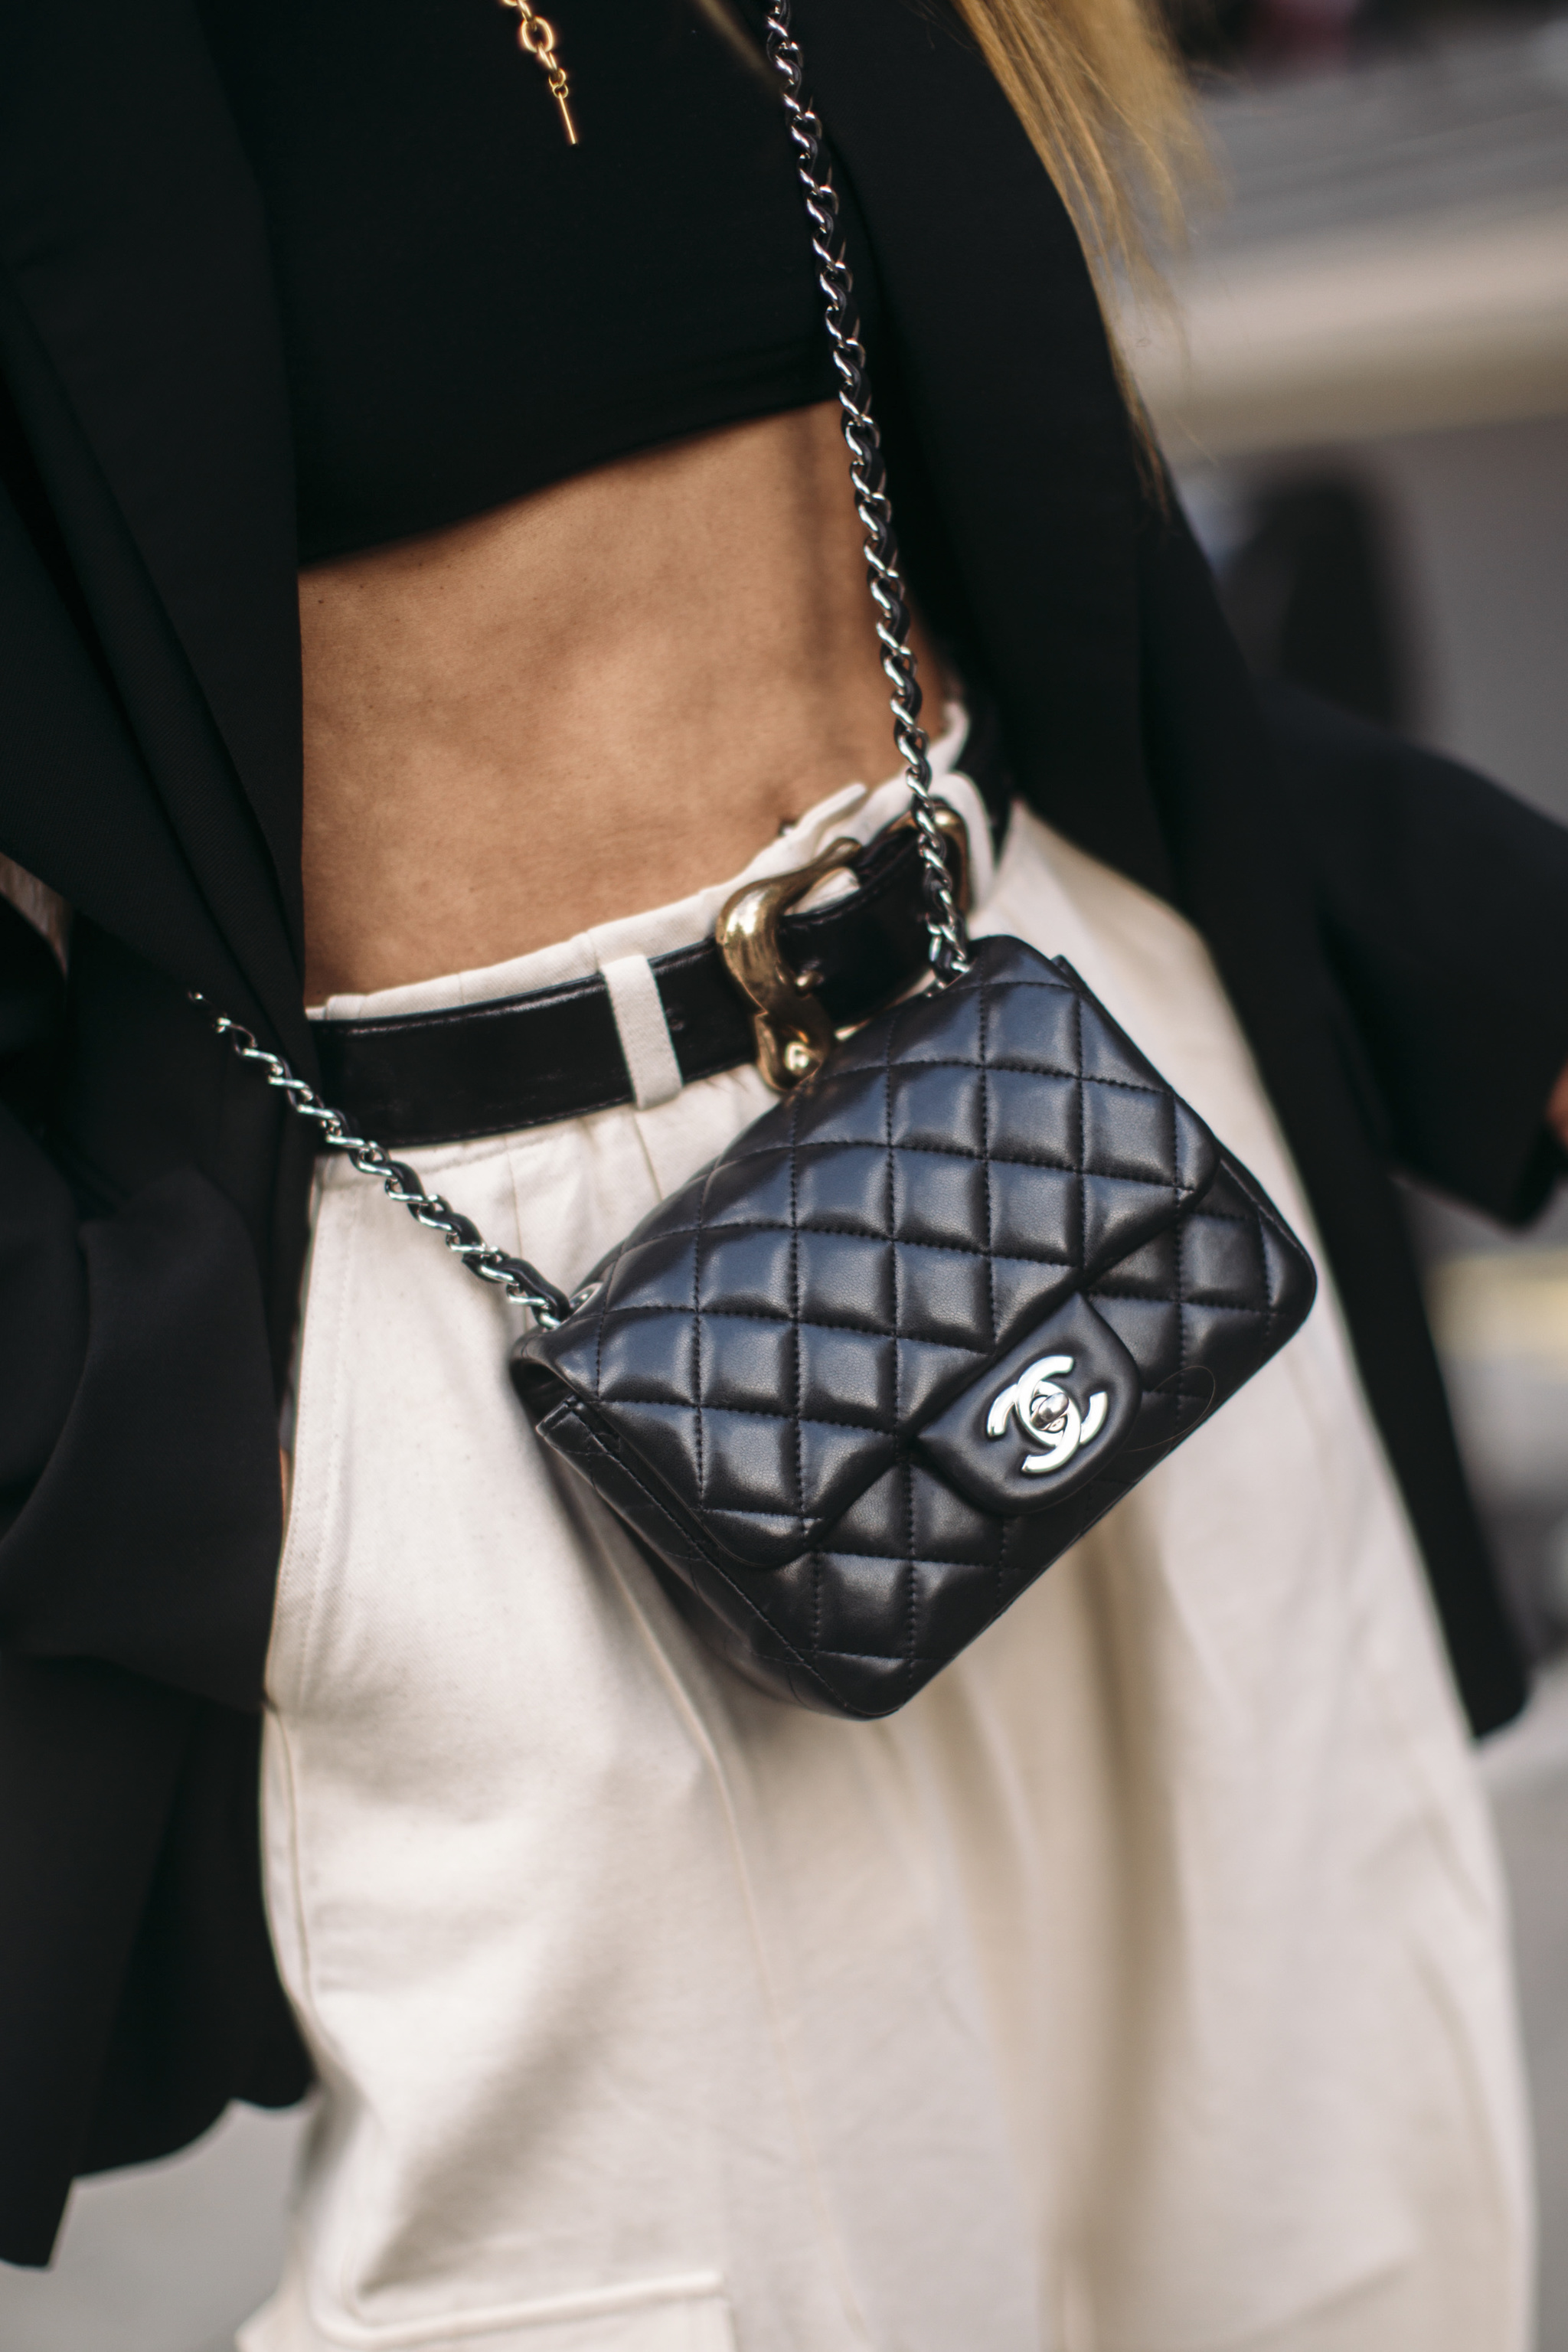 Chanel  thương hiệu túi xa xỉ được bàn tán nhiều nhất 365 ngày qua